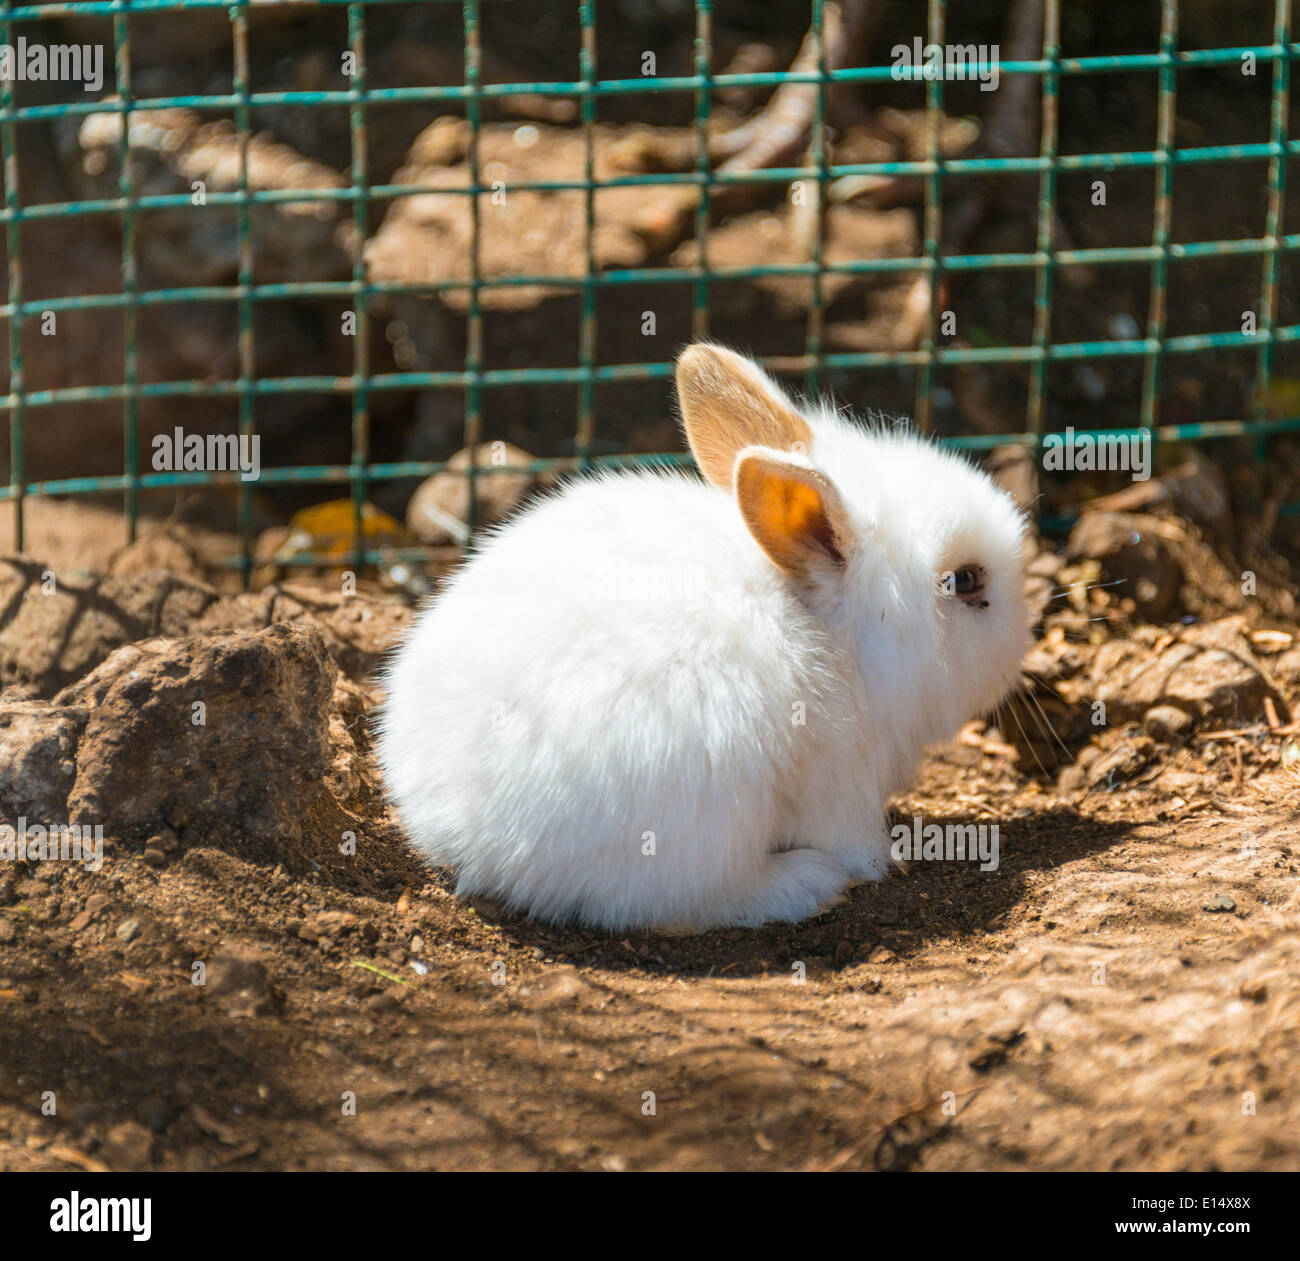 Jeune lapin blanc dans une cage, captive Banque D'Images